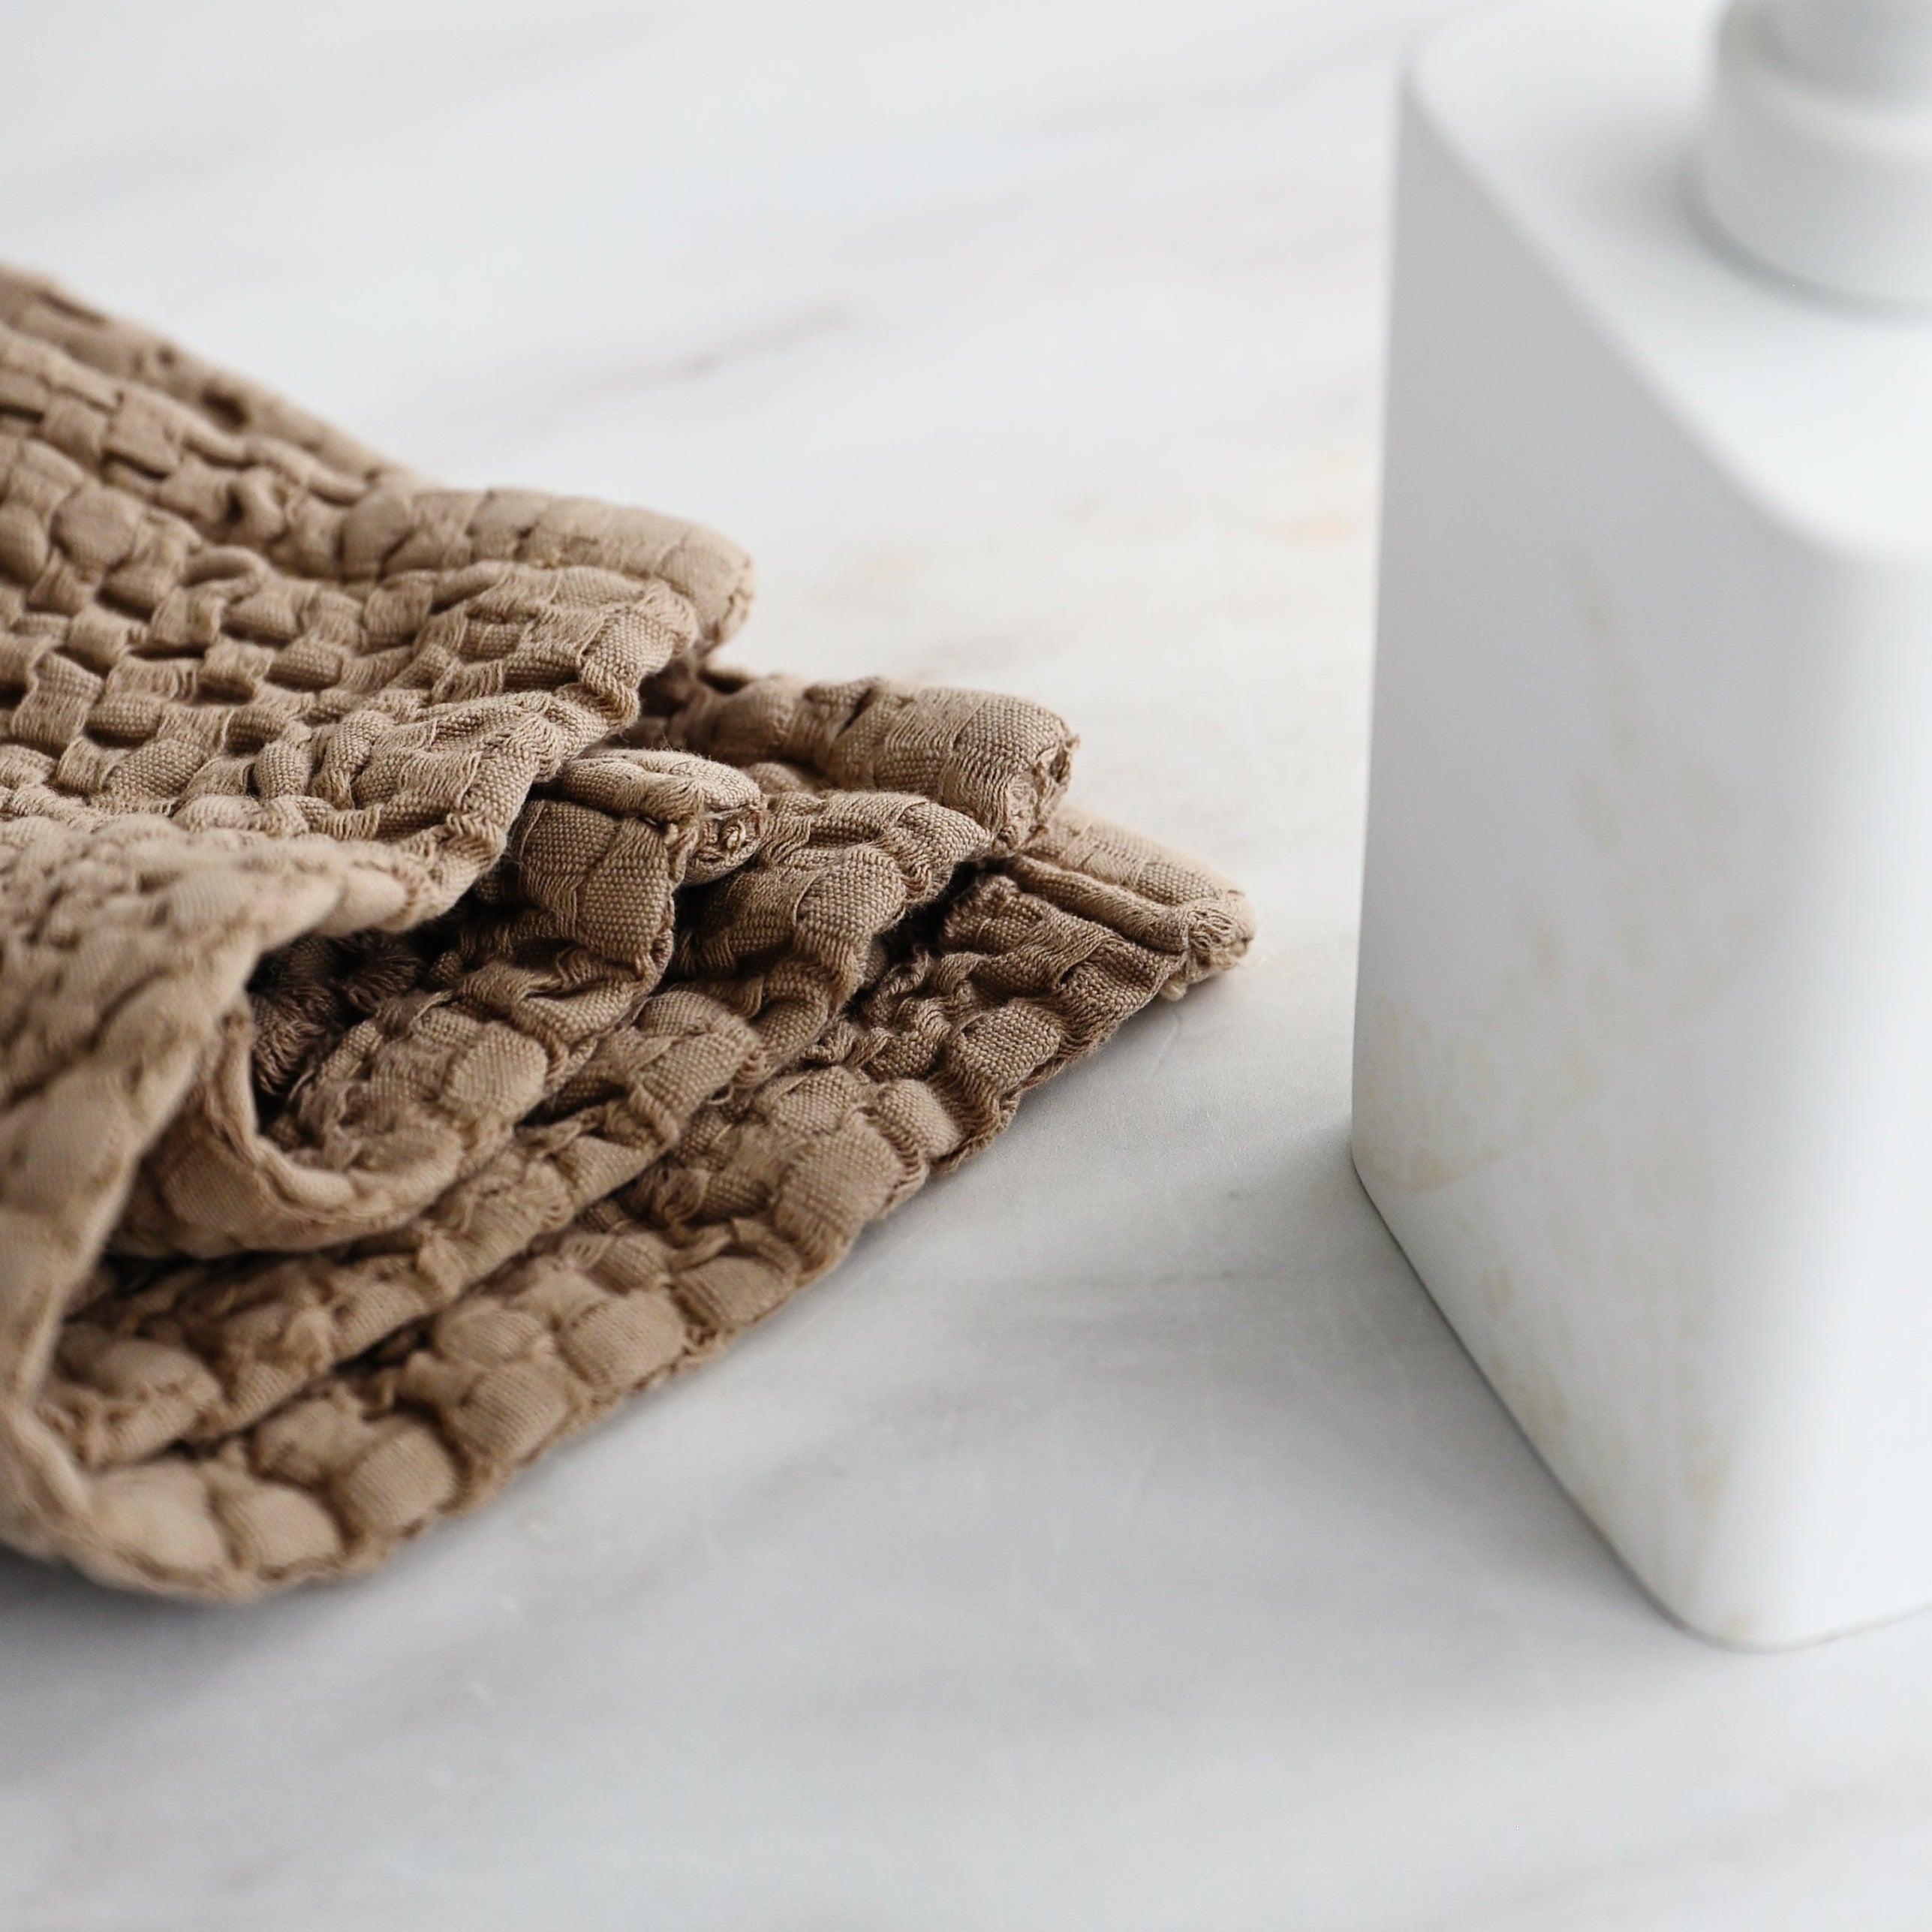 Heveya Vegan Cotton Face Towel